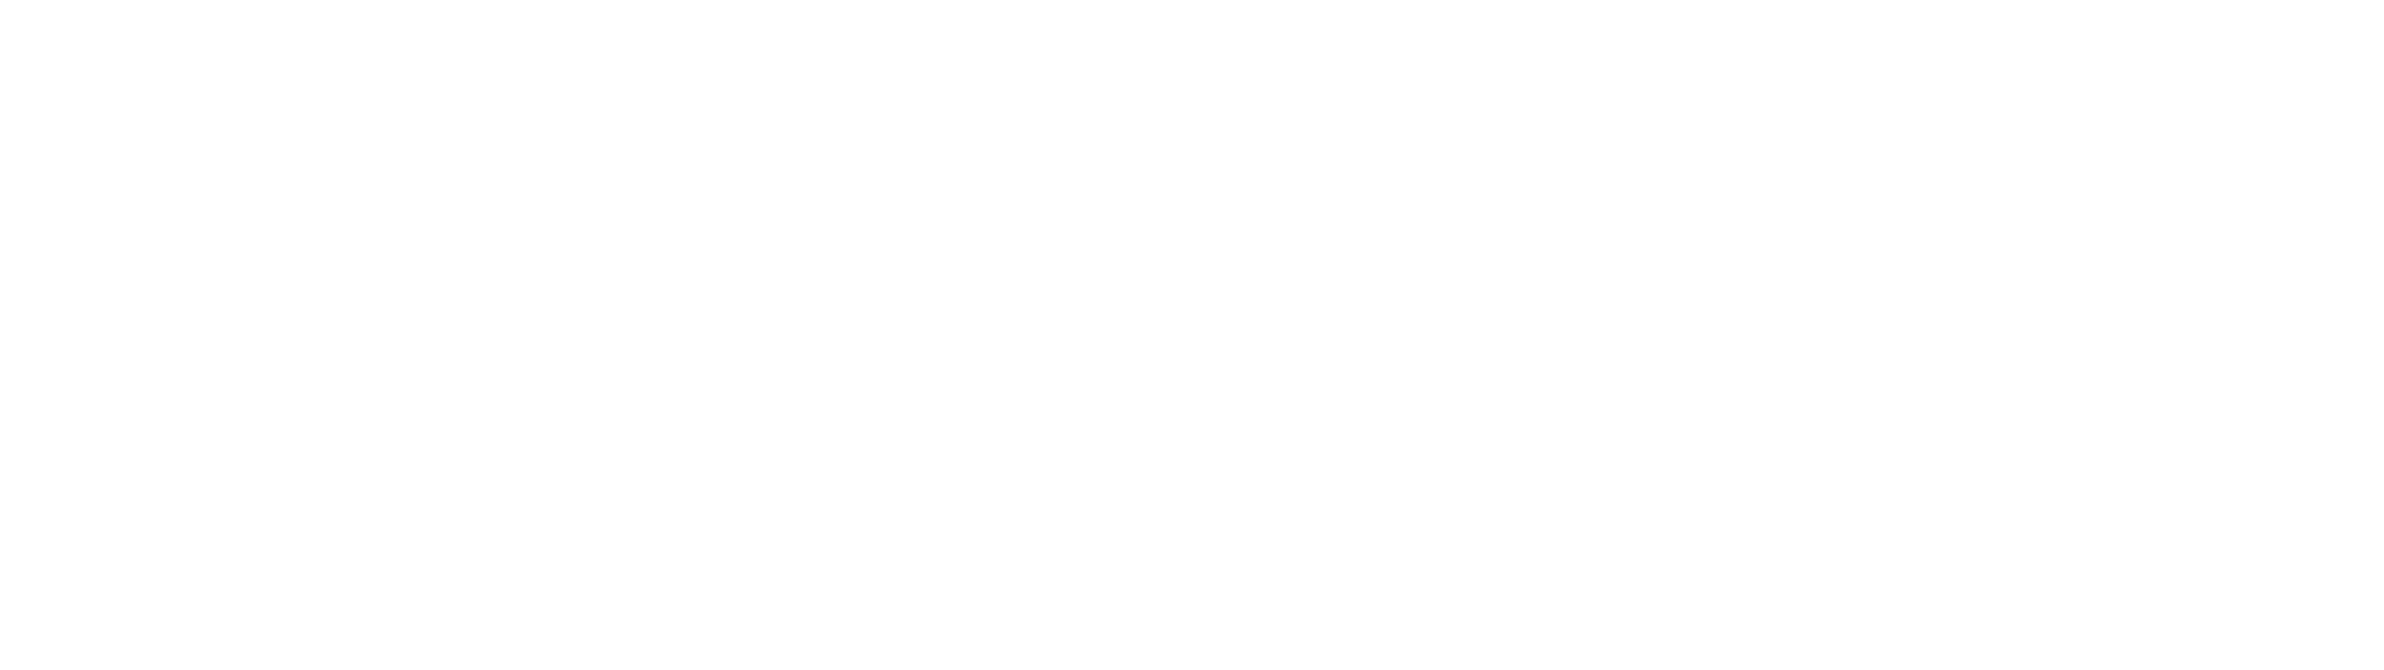 R E M A X Property Associates Logo PNG